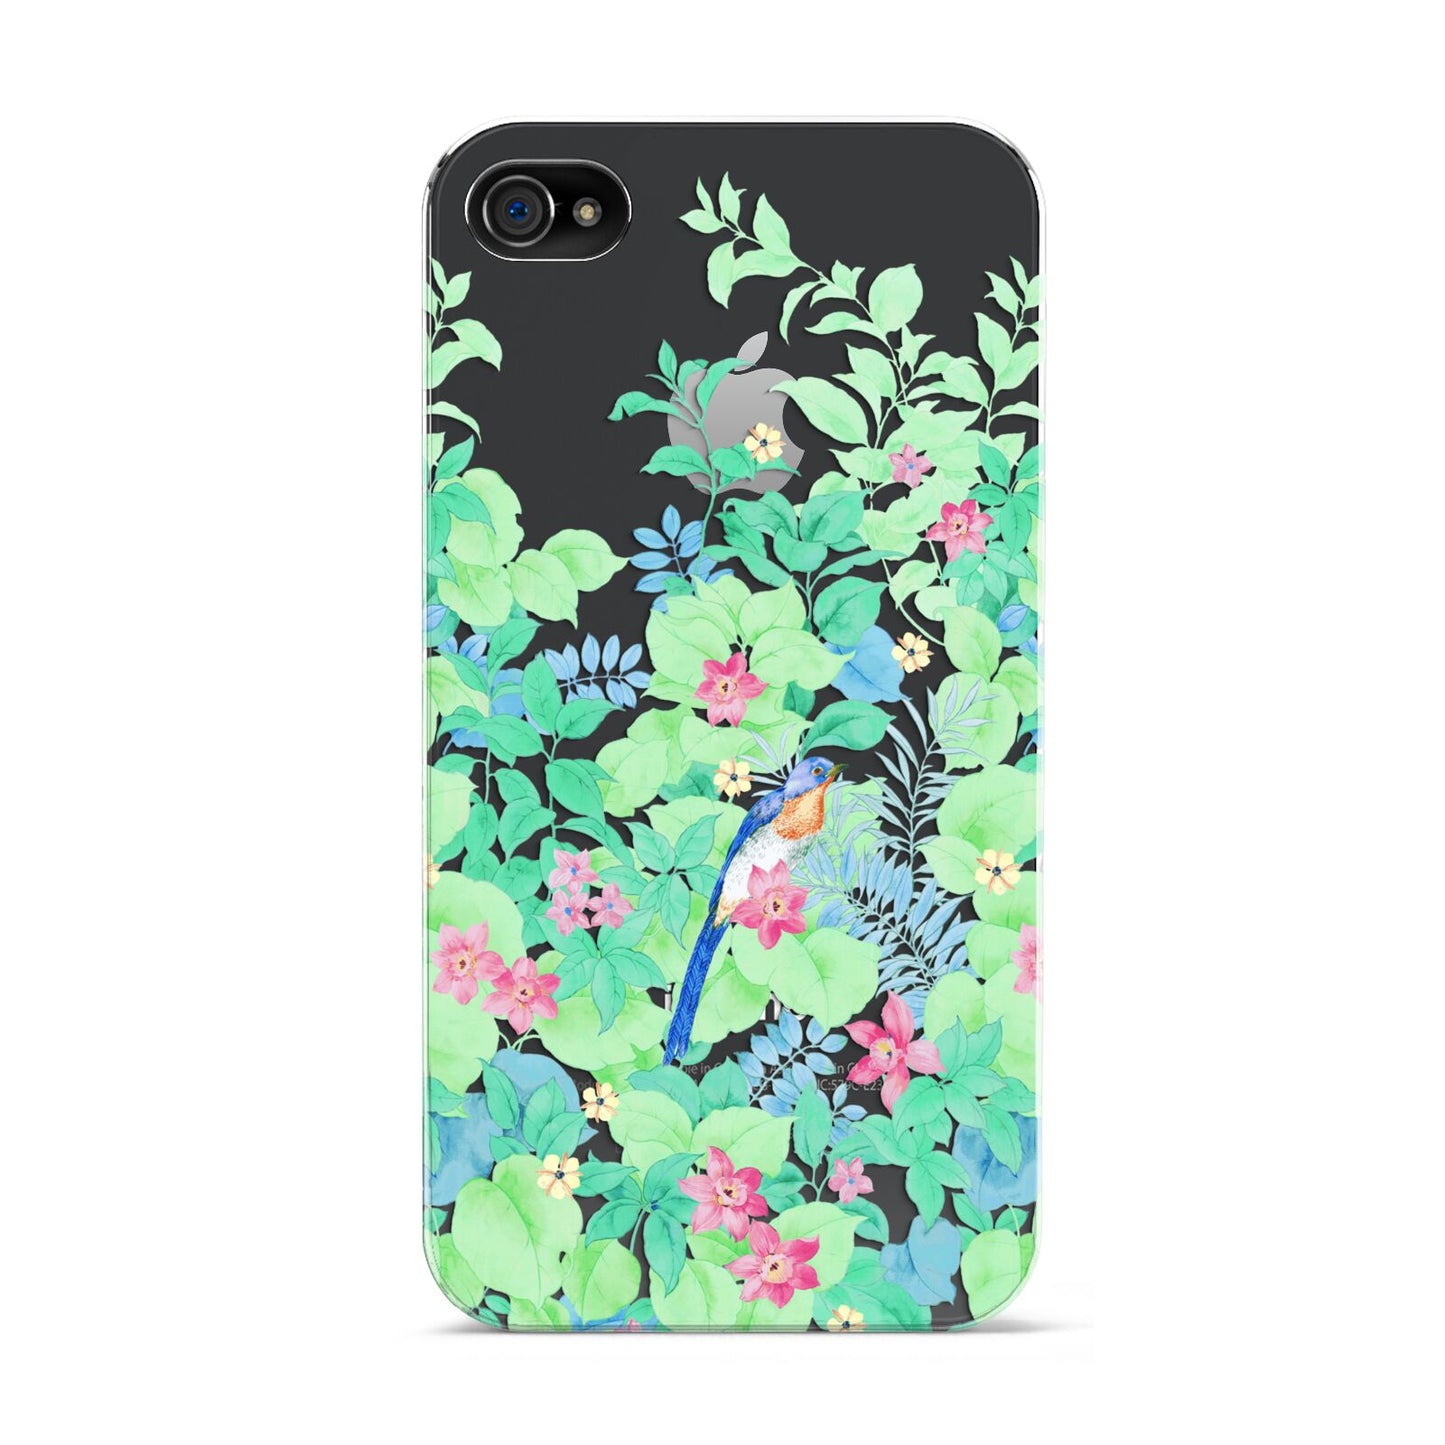 Watercolour Floral Apple iPhone 4s Case